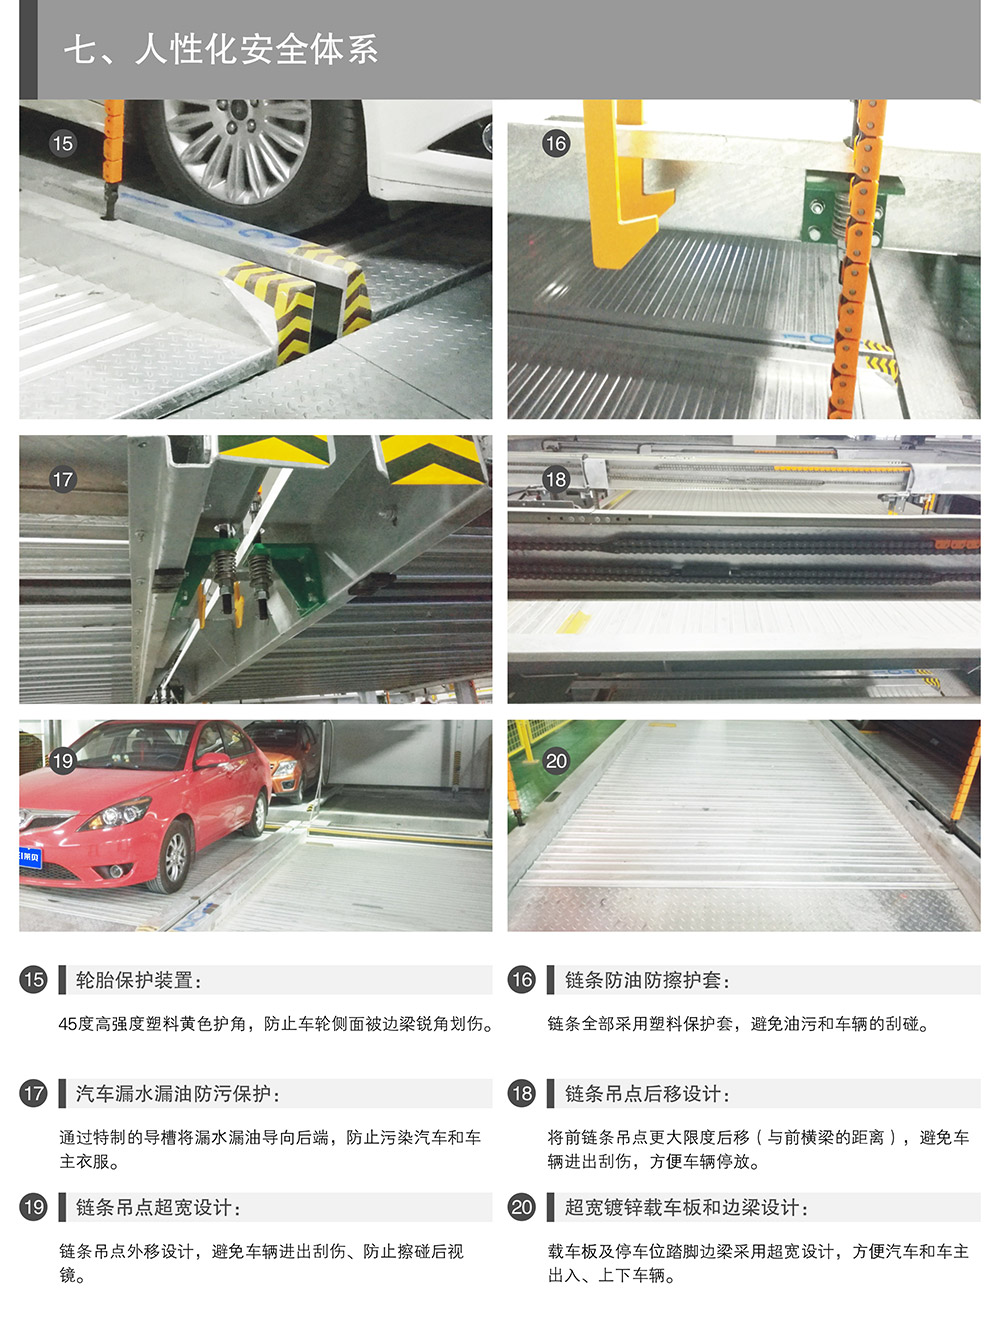 成都重庆PSH3三层升降横移立体车库设备人性化安全体系.jpg